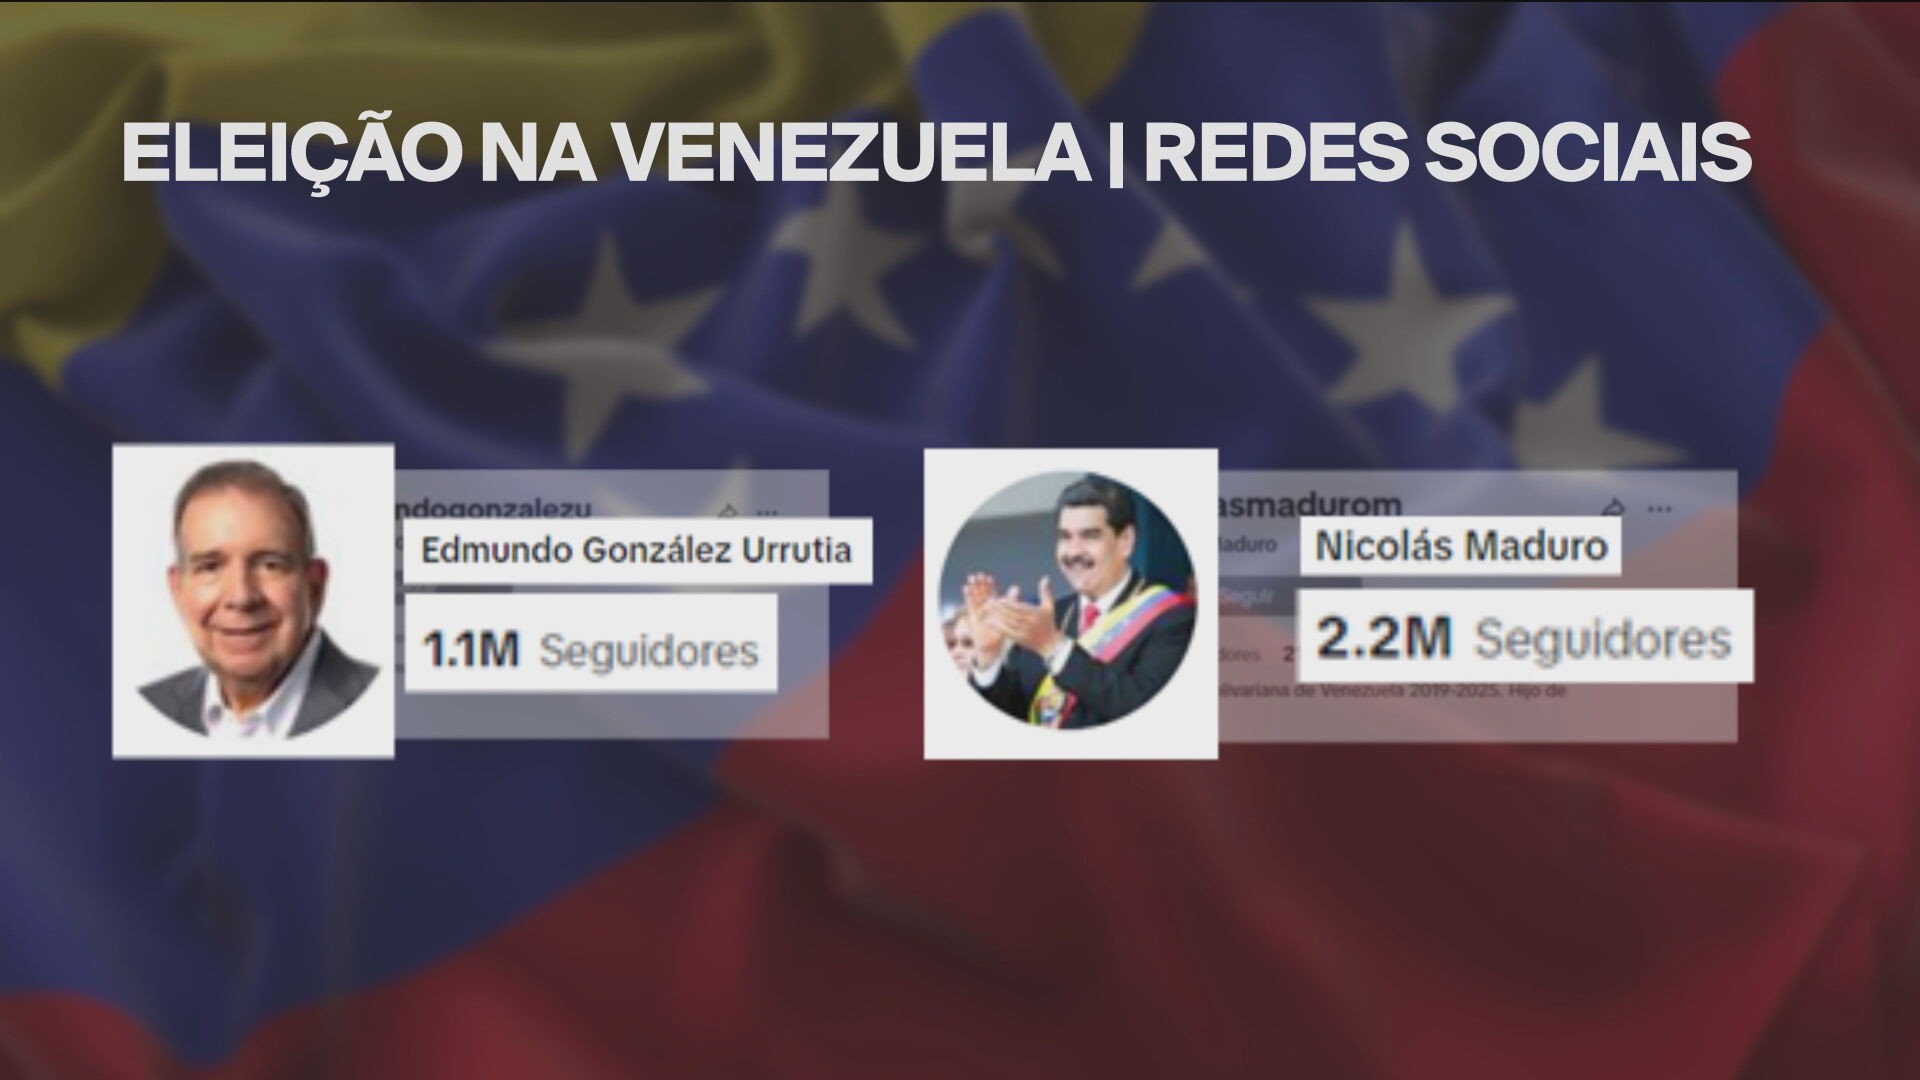 Maduro dança salsa, e Edmundo González mostra lado familiar: presidenciáveis usam redes sociais para conquistar eleitores na Venezuela